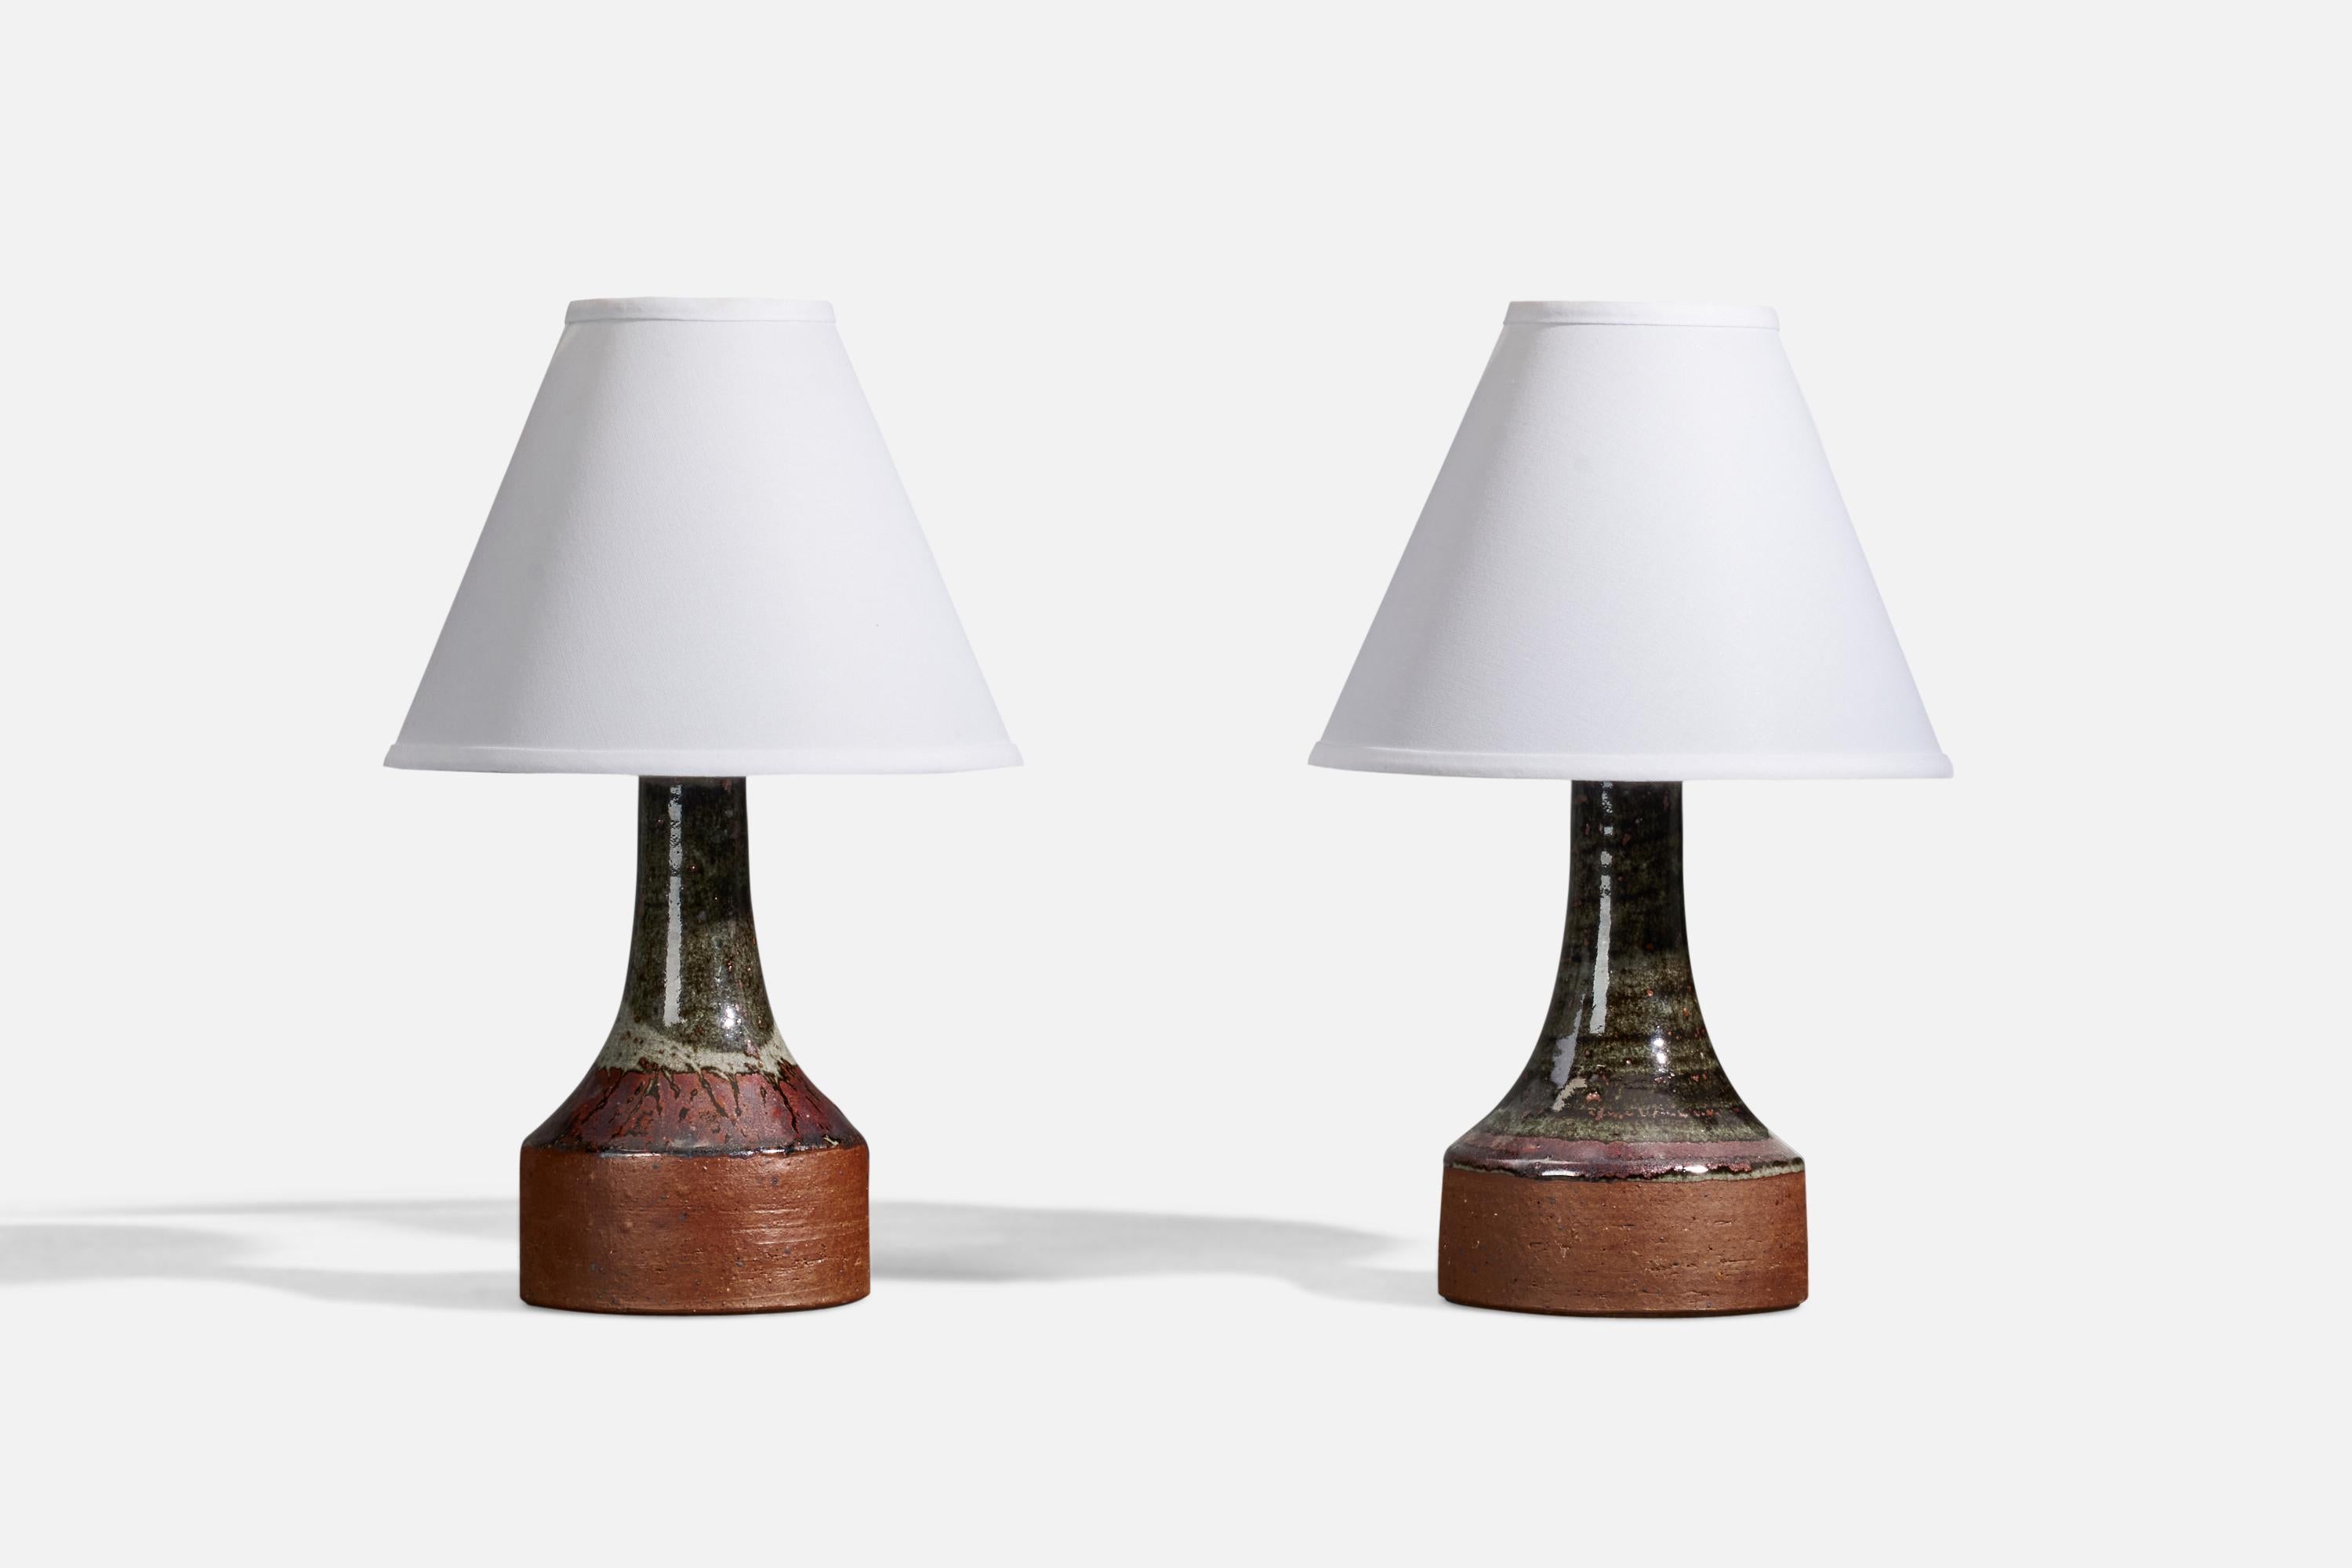 Une paire de lampes de table conçues et produites par Helle Allpass dans son studio, Danemark, années 1960. Estampillé.

Les dimensions indiquées ne comprennent pas les abat-jour. La hauteur inclut la douille. 

Le vernis présente des couleurs